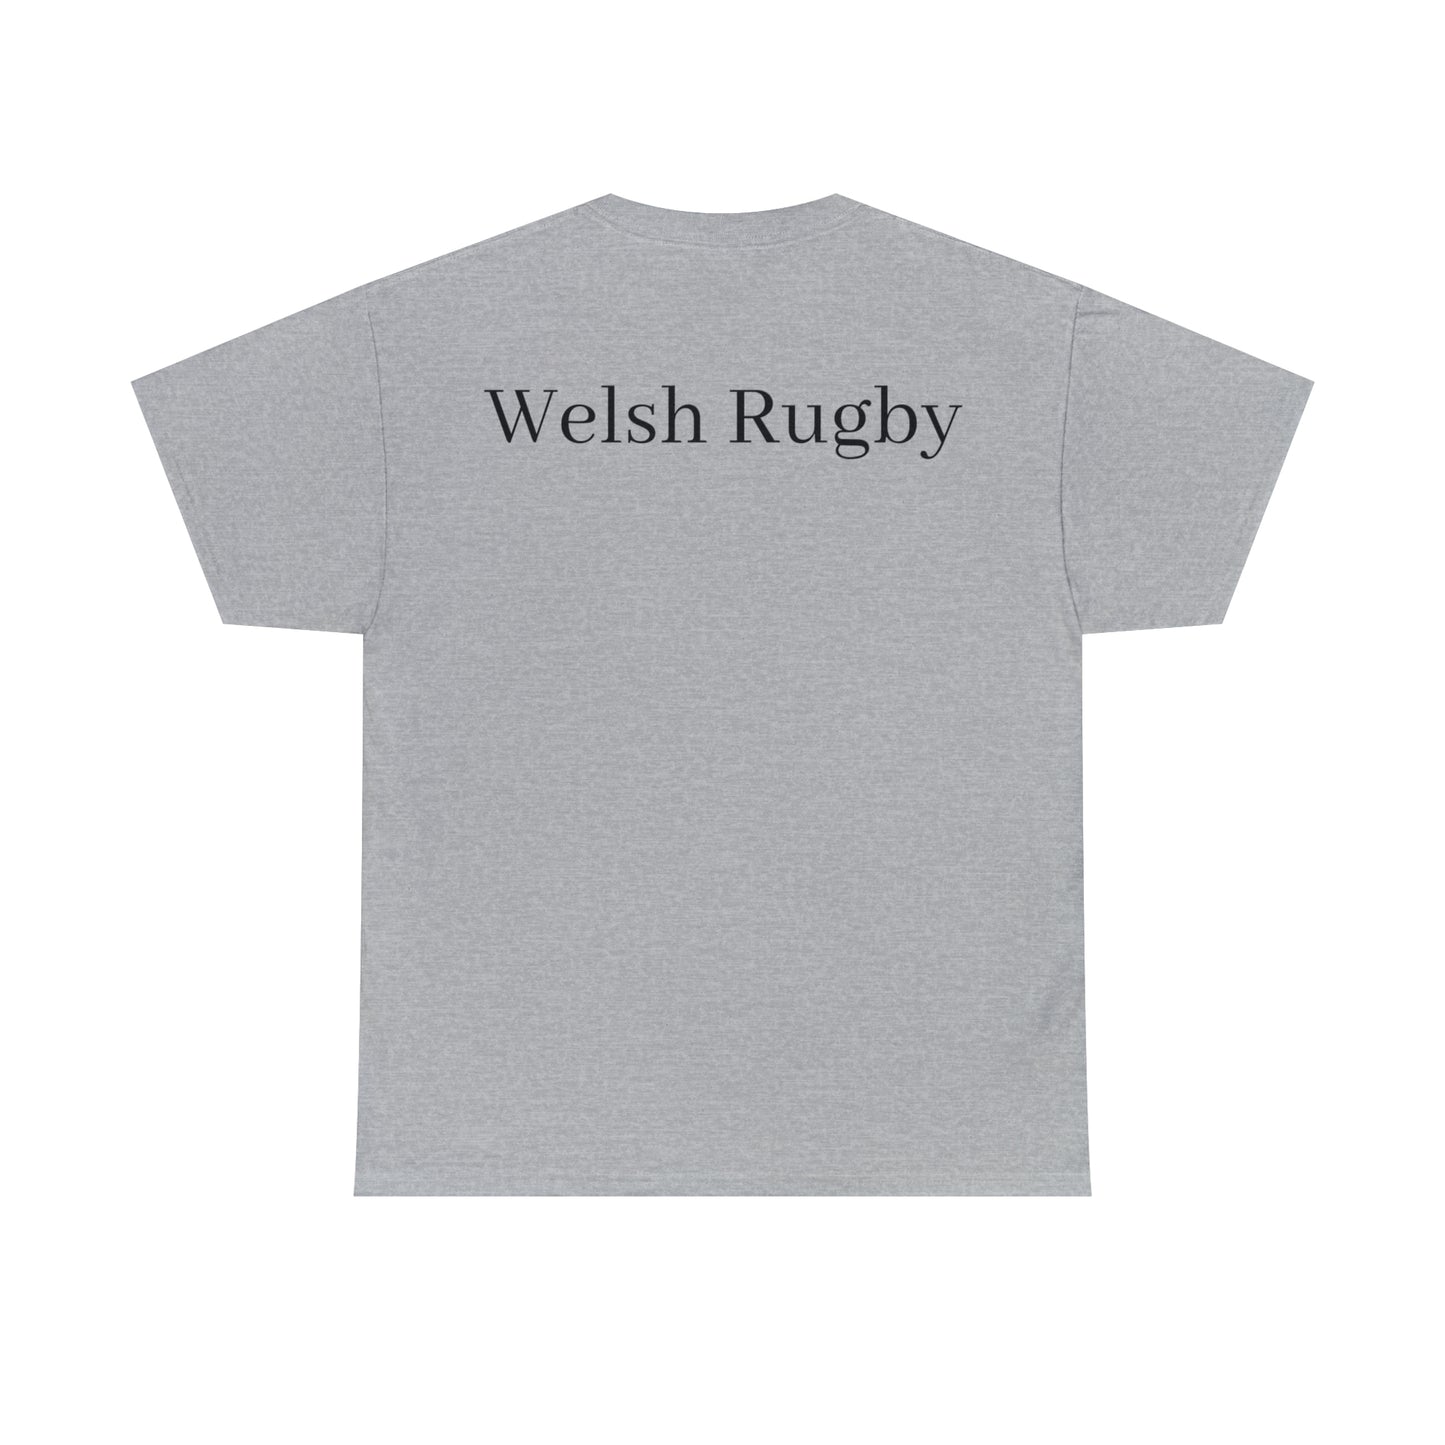 Welsh Dragon - light shirts